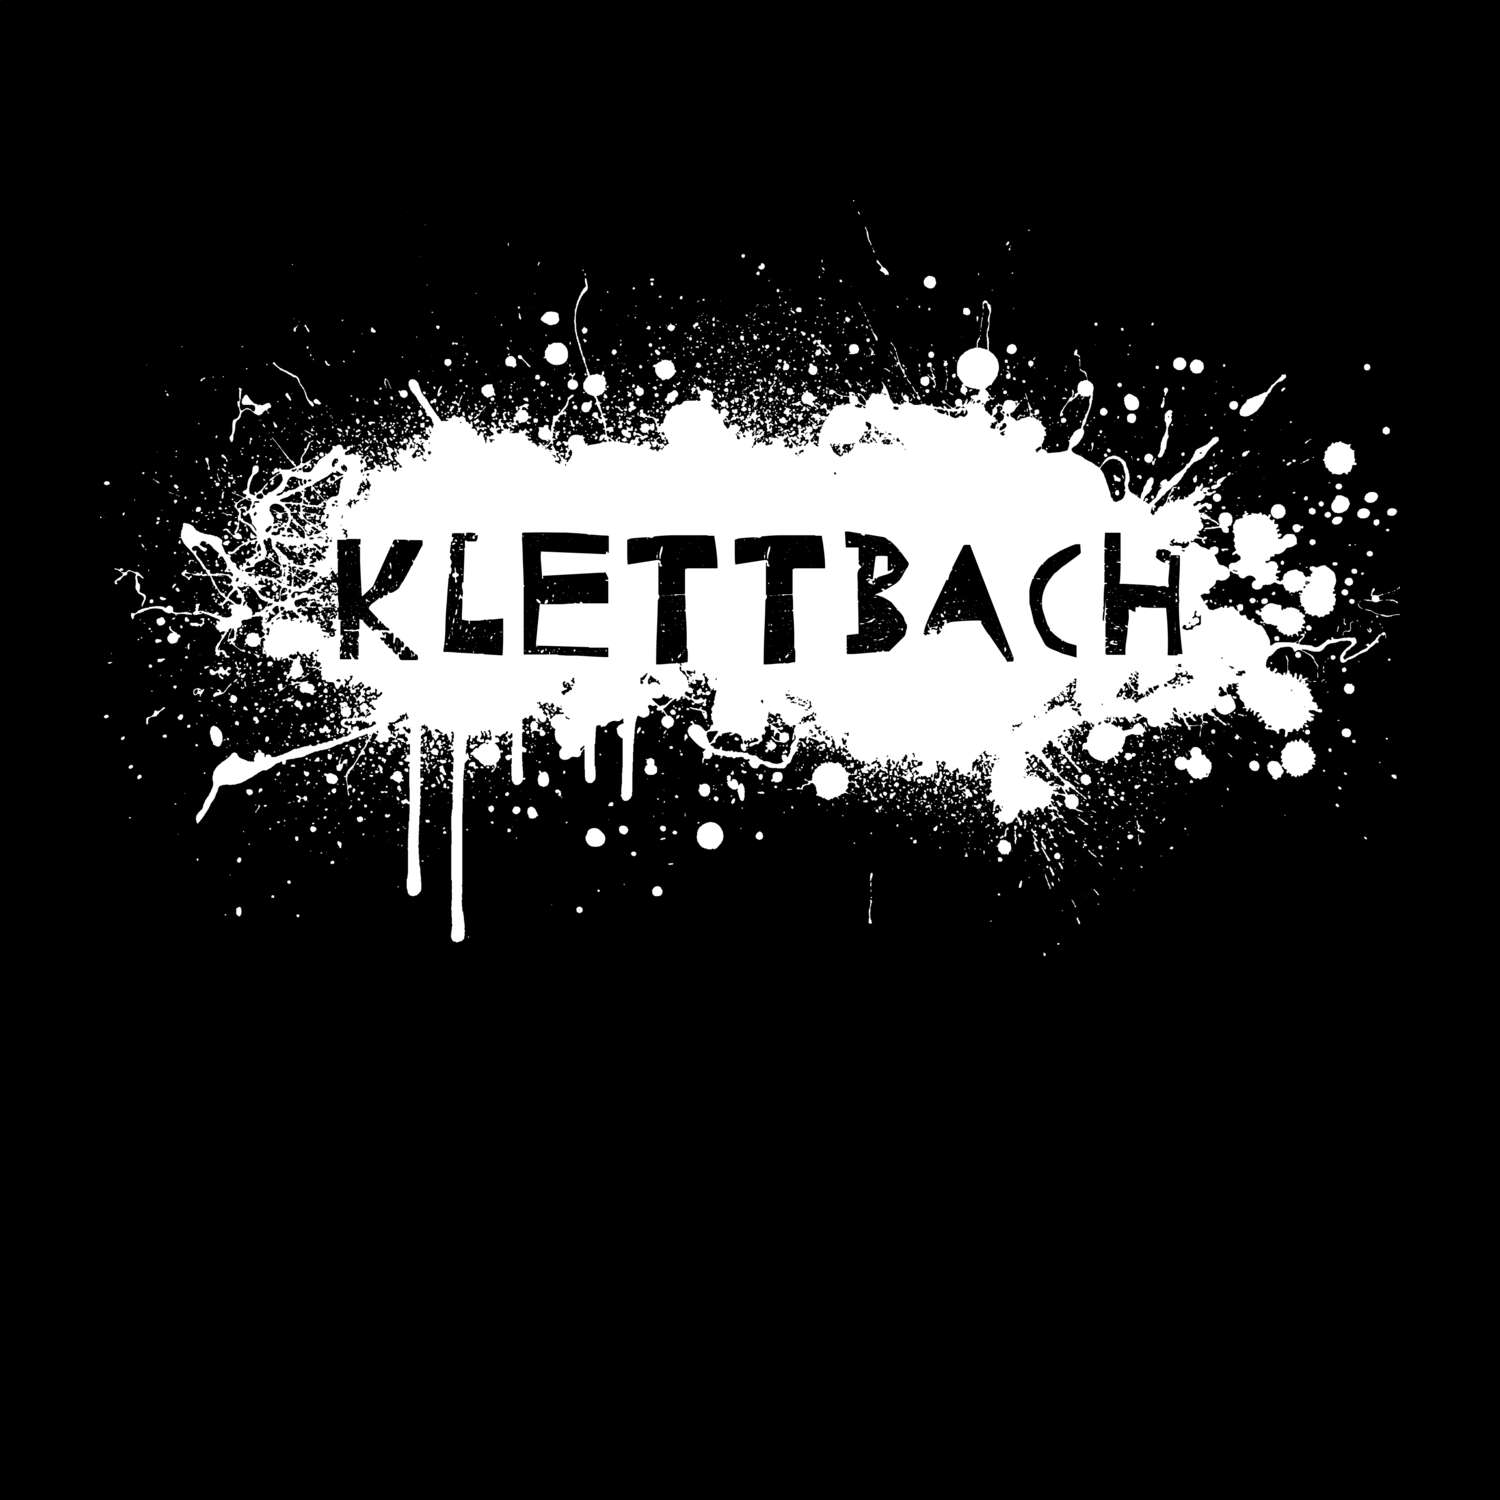 Klettbach T-Shirt »Paint Splash Punk«